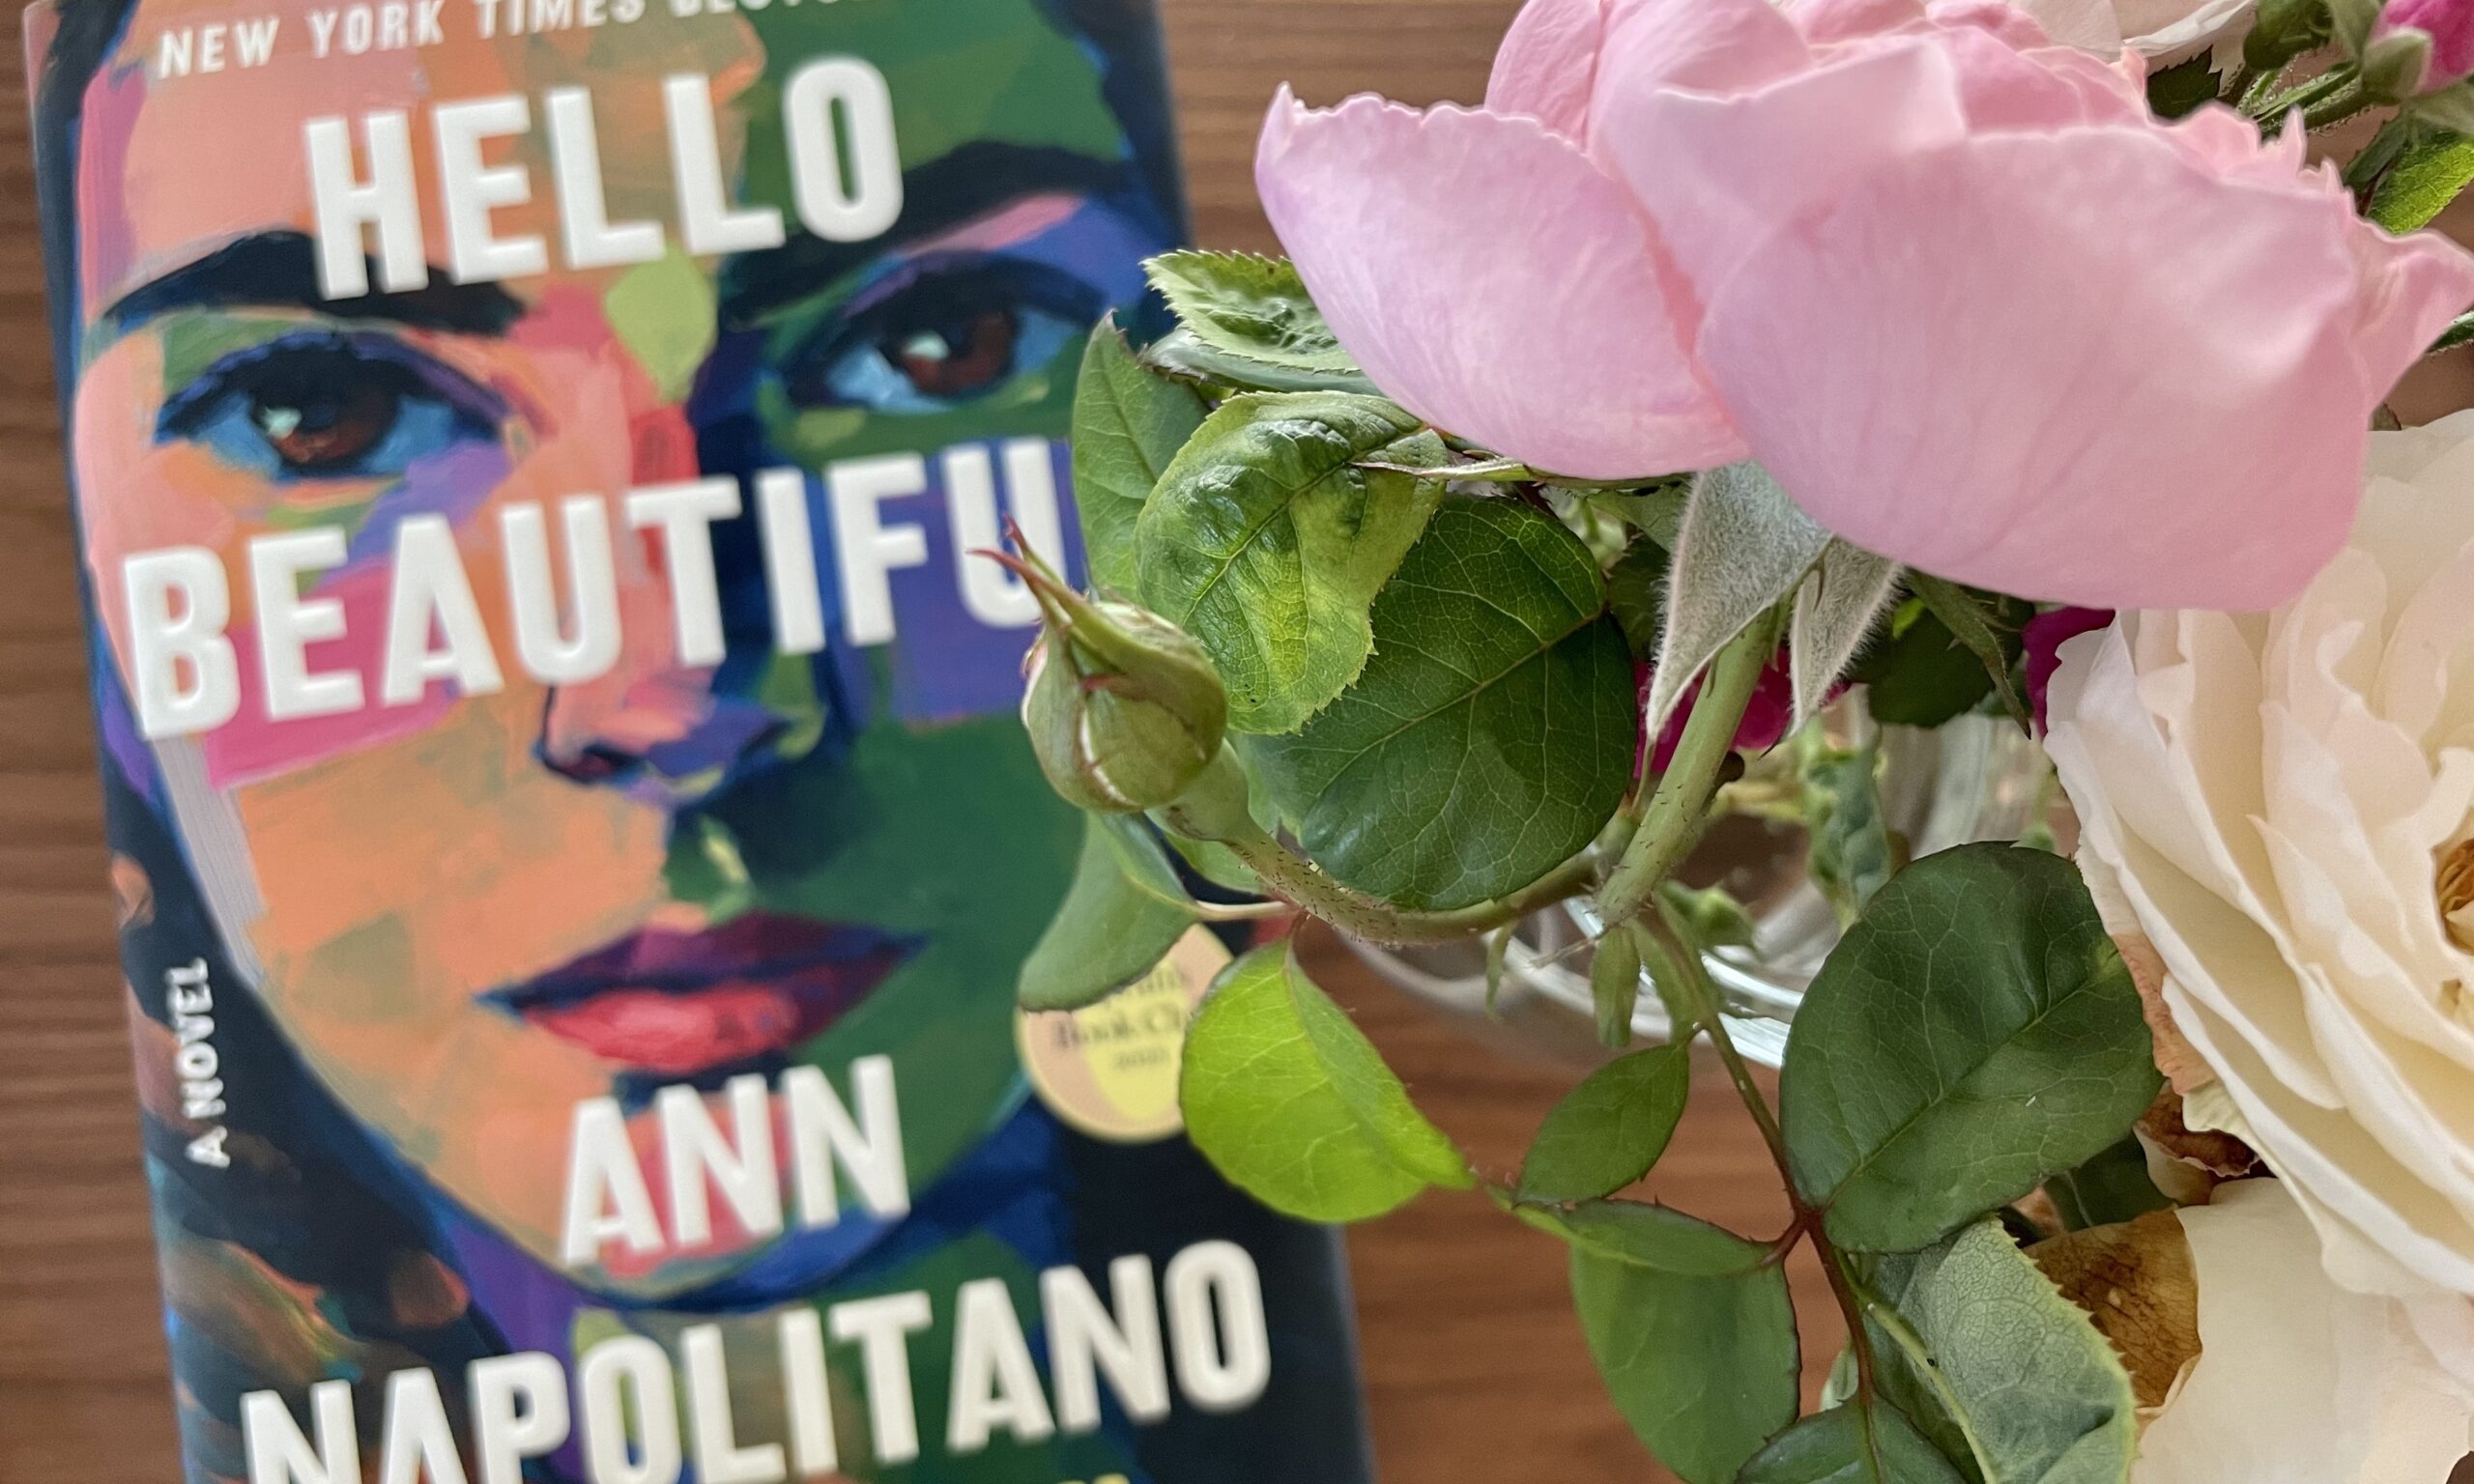 Hello, Beautiful by Ann Napolitano